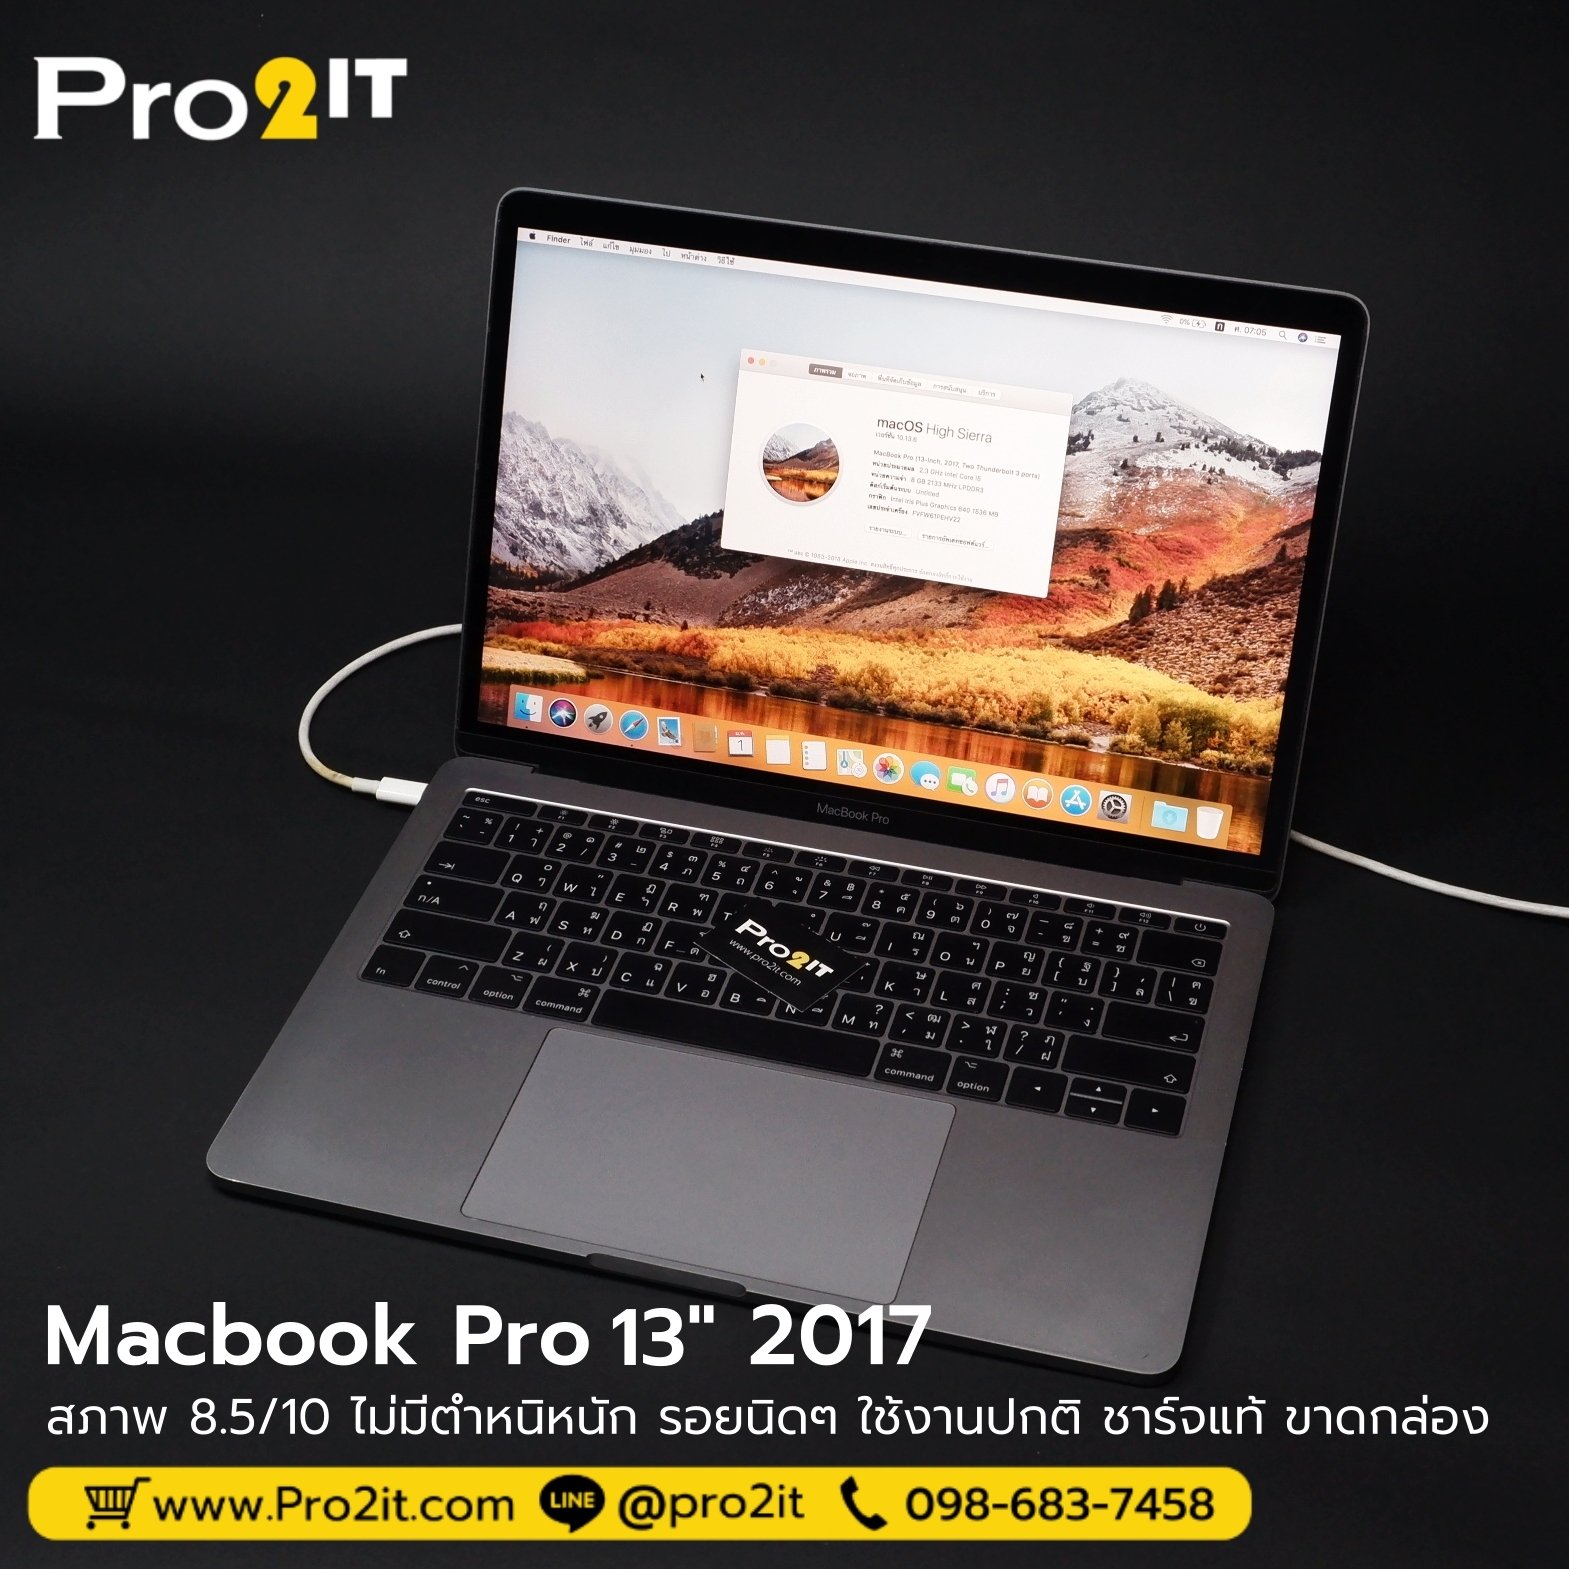 Macbook Pro 13" 2017 SpaceGray